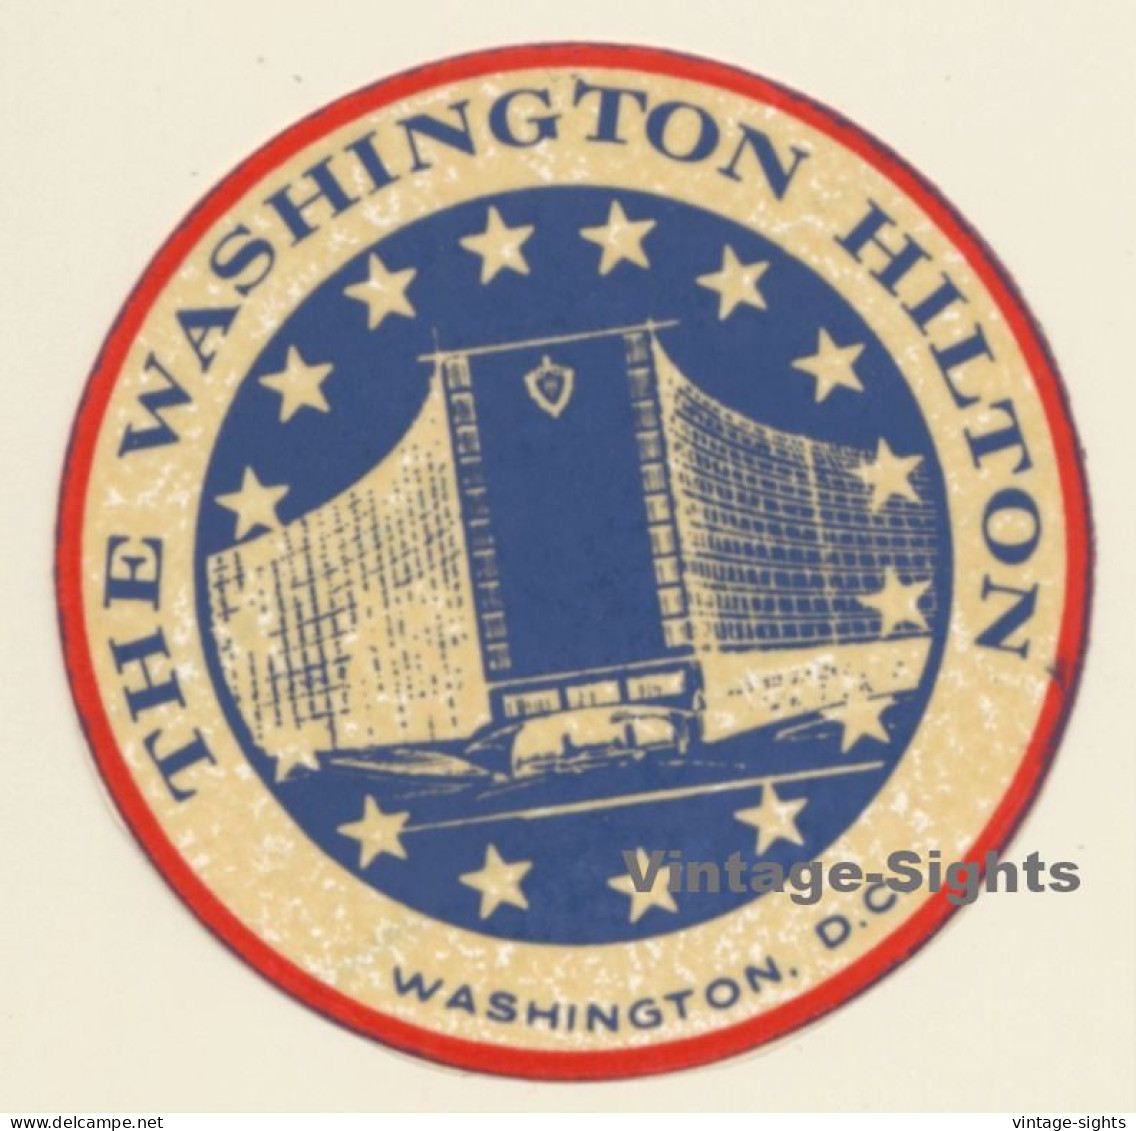 Washington D.C. / USA: The Washington Hotel (Vintage Self Adhesive Luggage Label / Sticker) - Hotel Labels